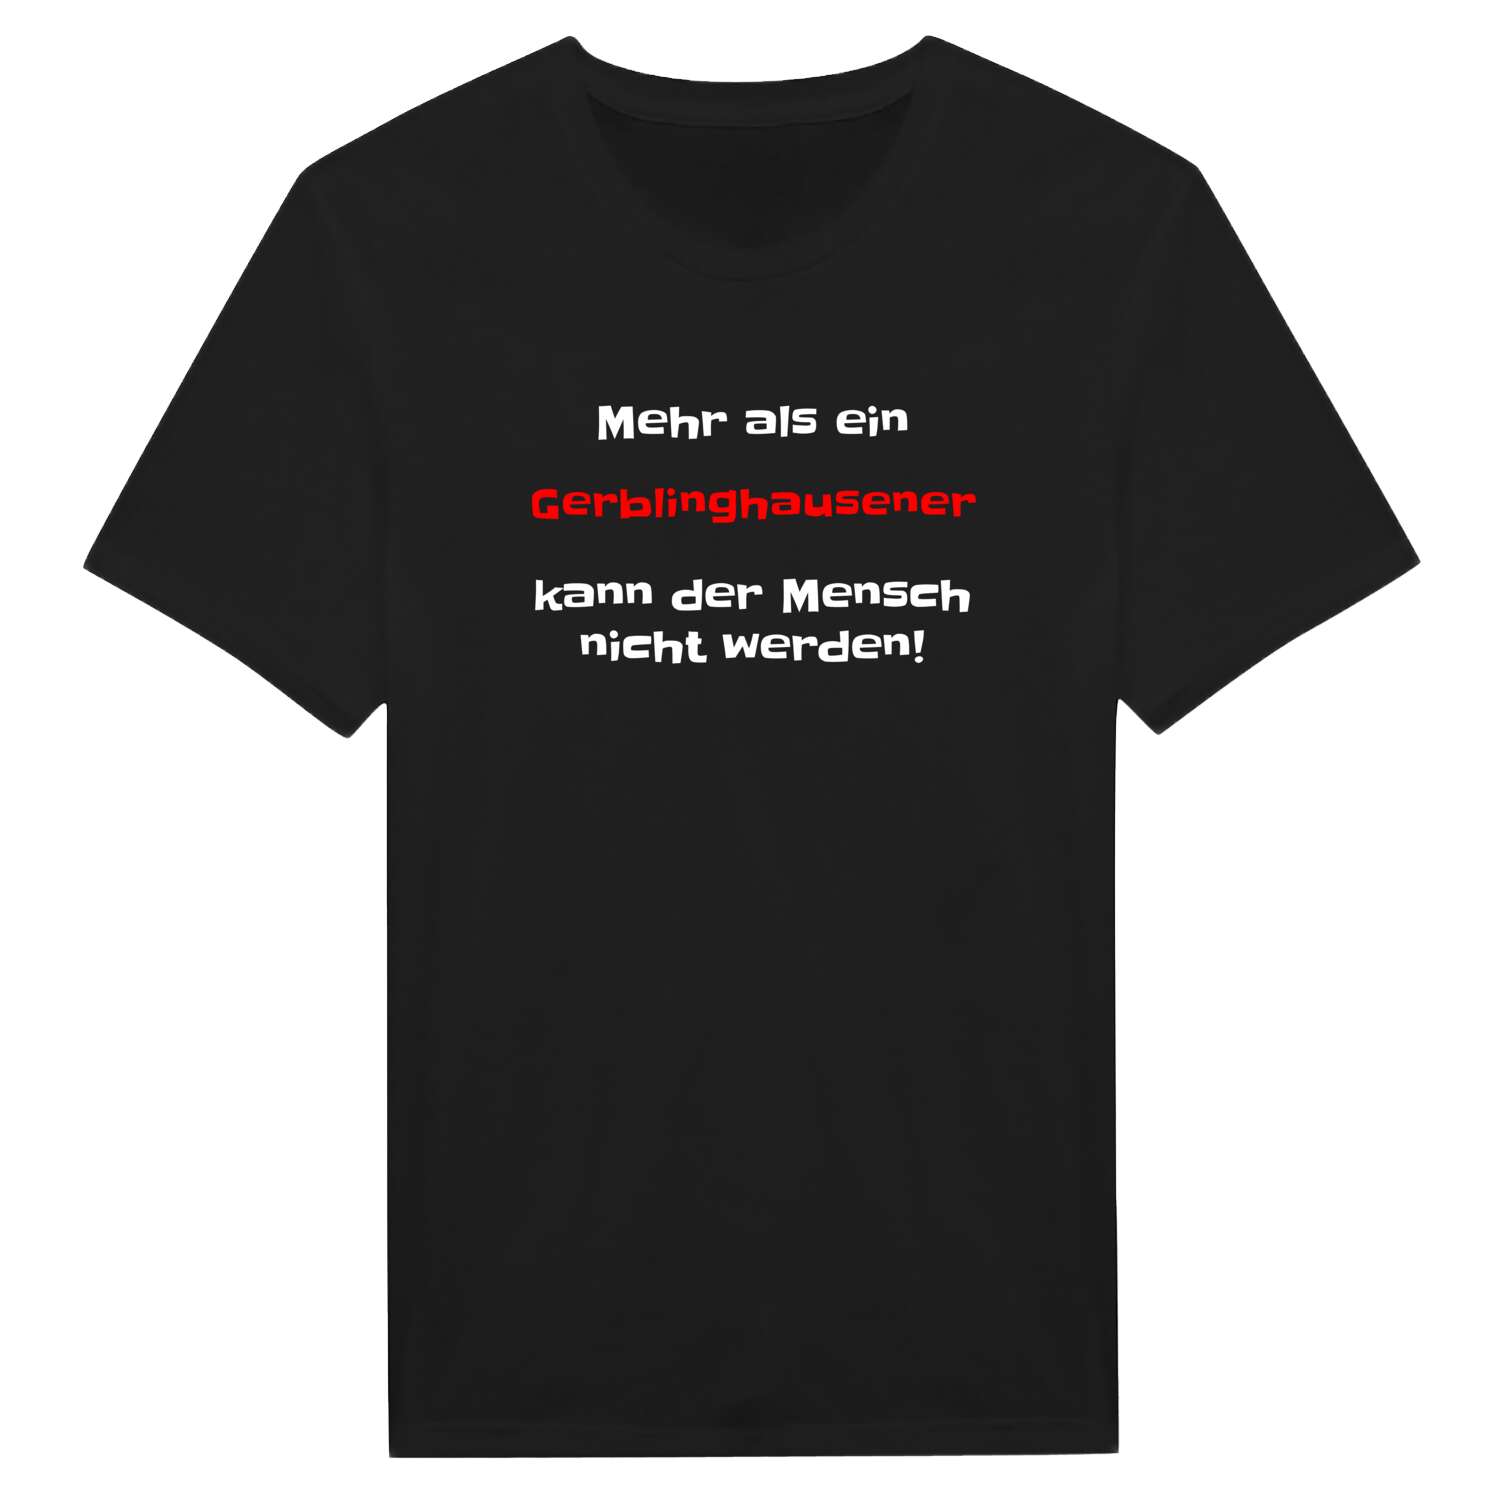 Gerblinghausen T-Shirt »Mehr als ein«